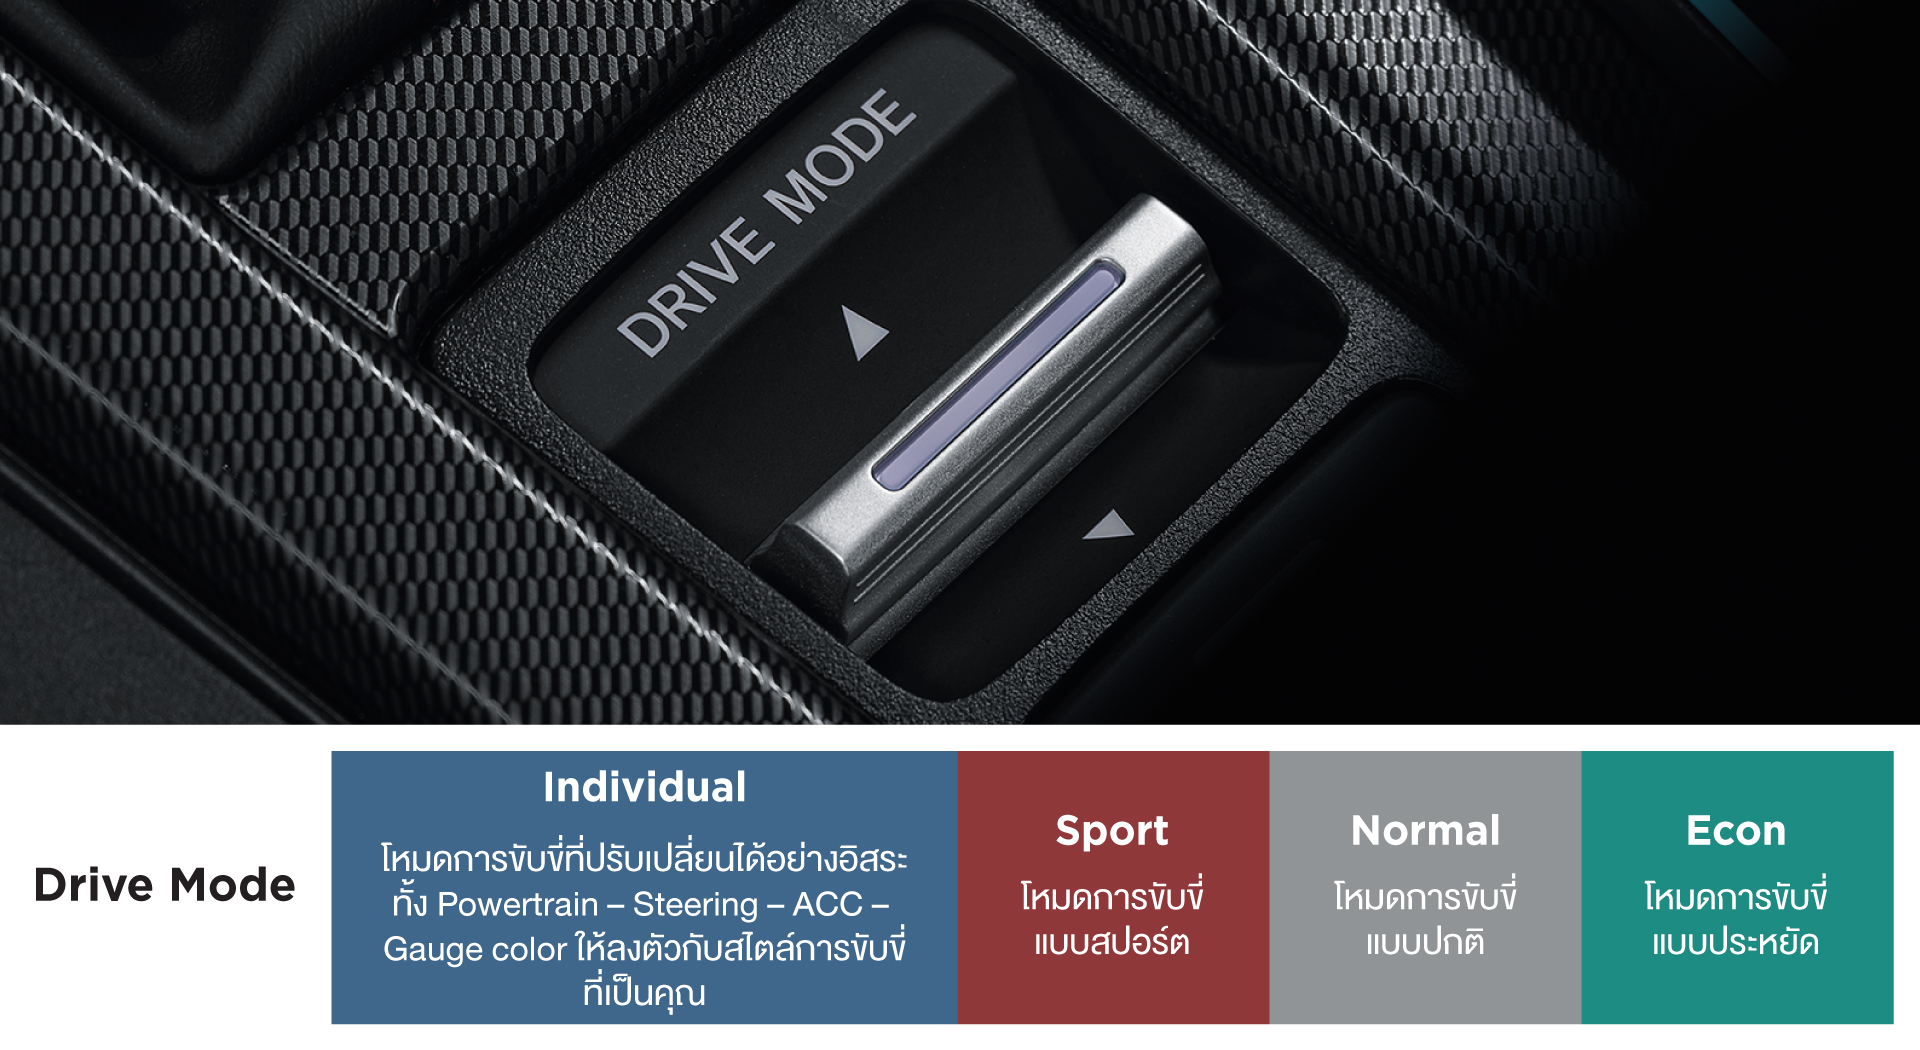 Drive Mode ตอบสนองทุกการขับขี่ด้วยโหมดการขับขี่ 4 รูปแบบ